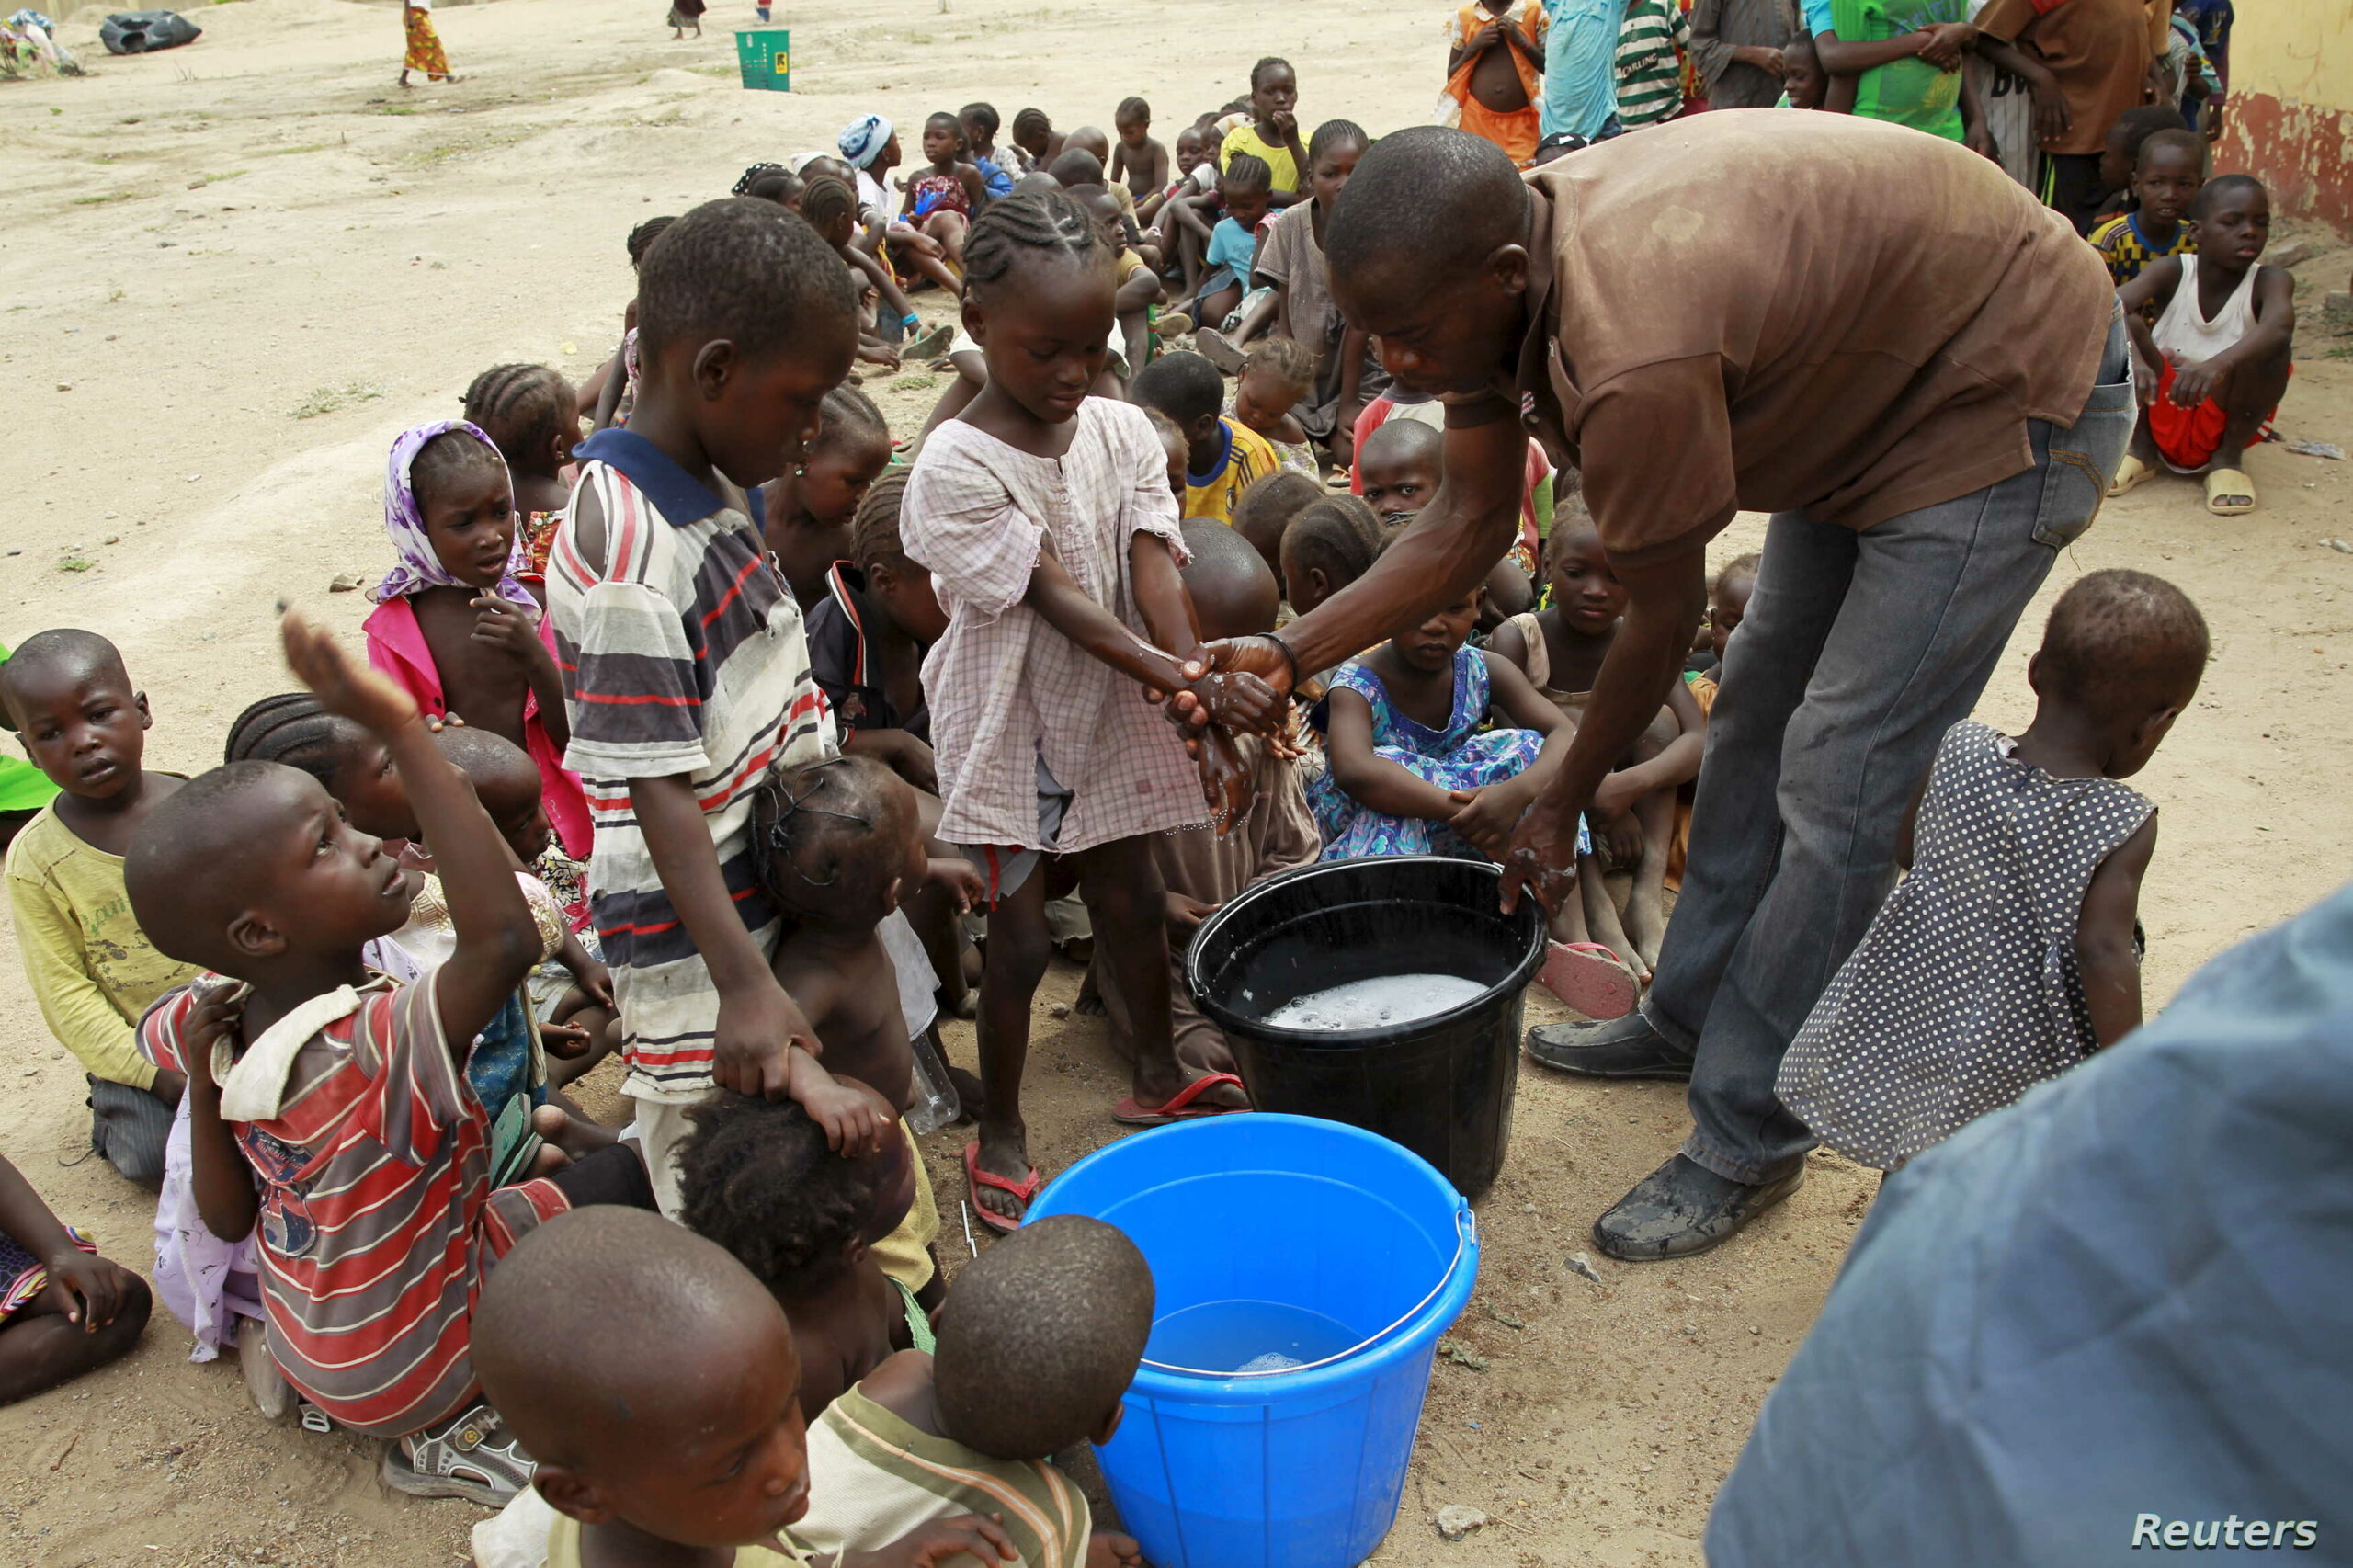 Νιγηρία: Επιδημία χολέρας σε βόρεια πολιτεία, 20 νεκροί σε δύο εβδομάδες